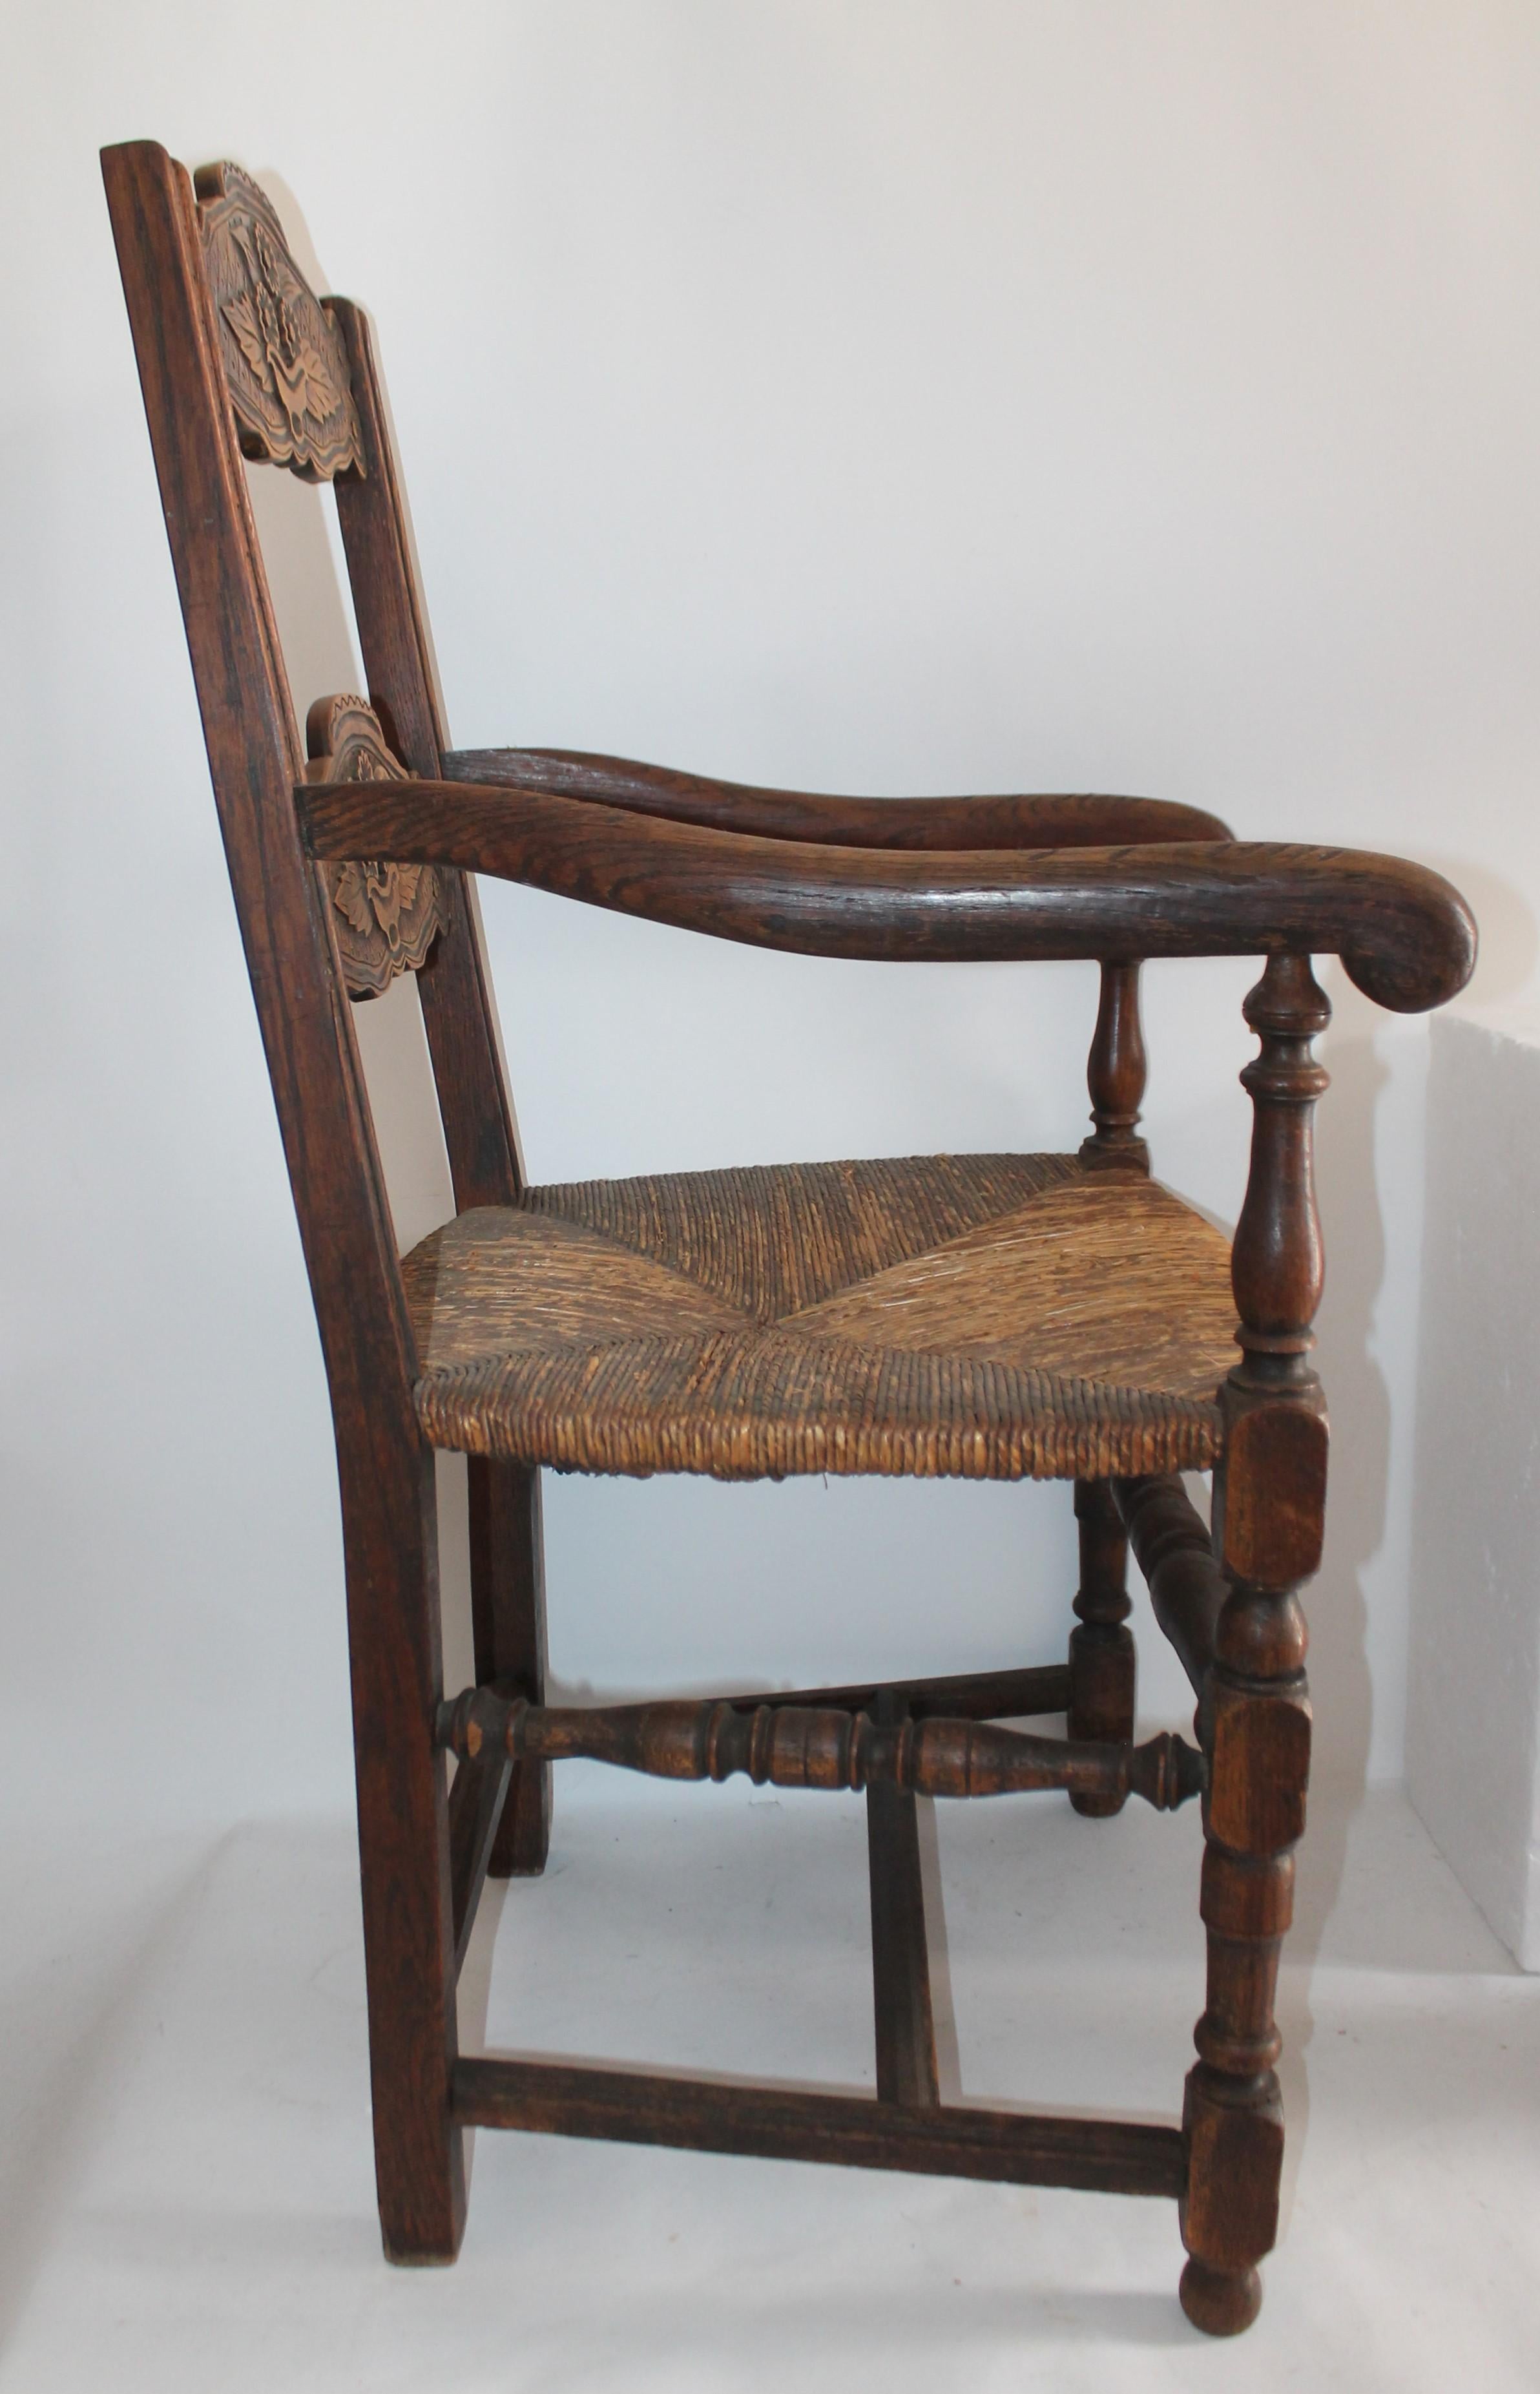 fauteuil de style mexicain/américain du 19ème siècle, sculpté à la main. A été trouvé au Nouveau Mexique. Le siège est le siège d'origine en jonc.